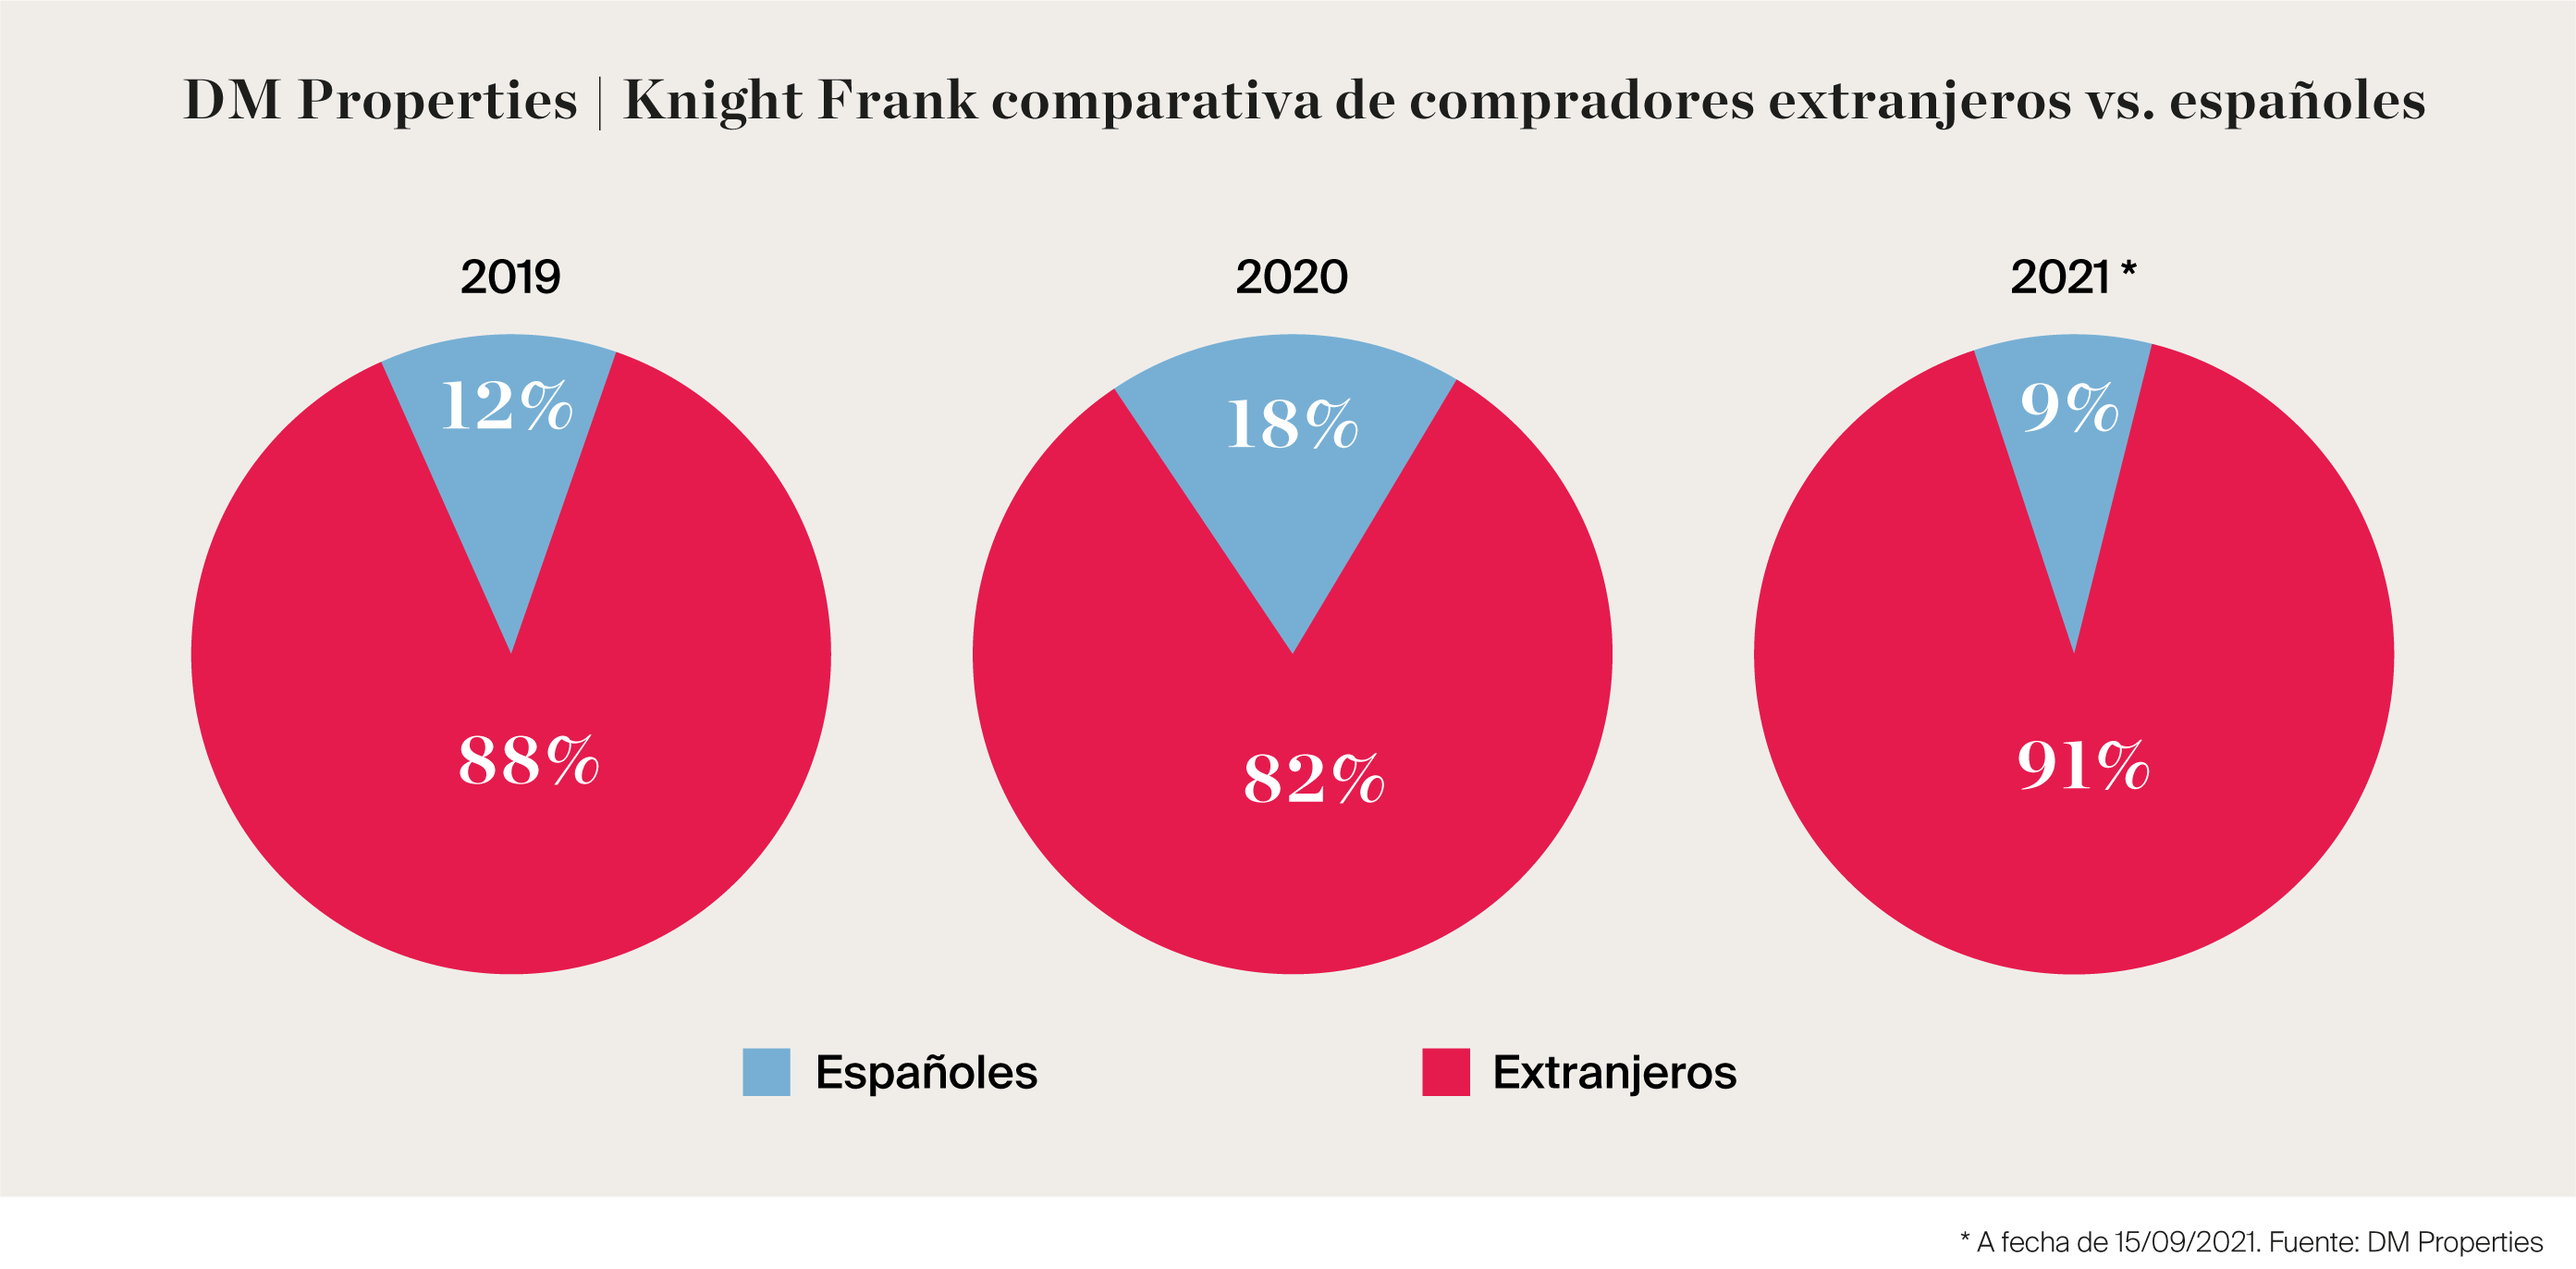 DM Properties | Knight Frank comparativa de compradores extranjeros vs. españoles